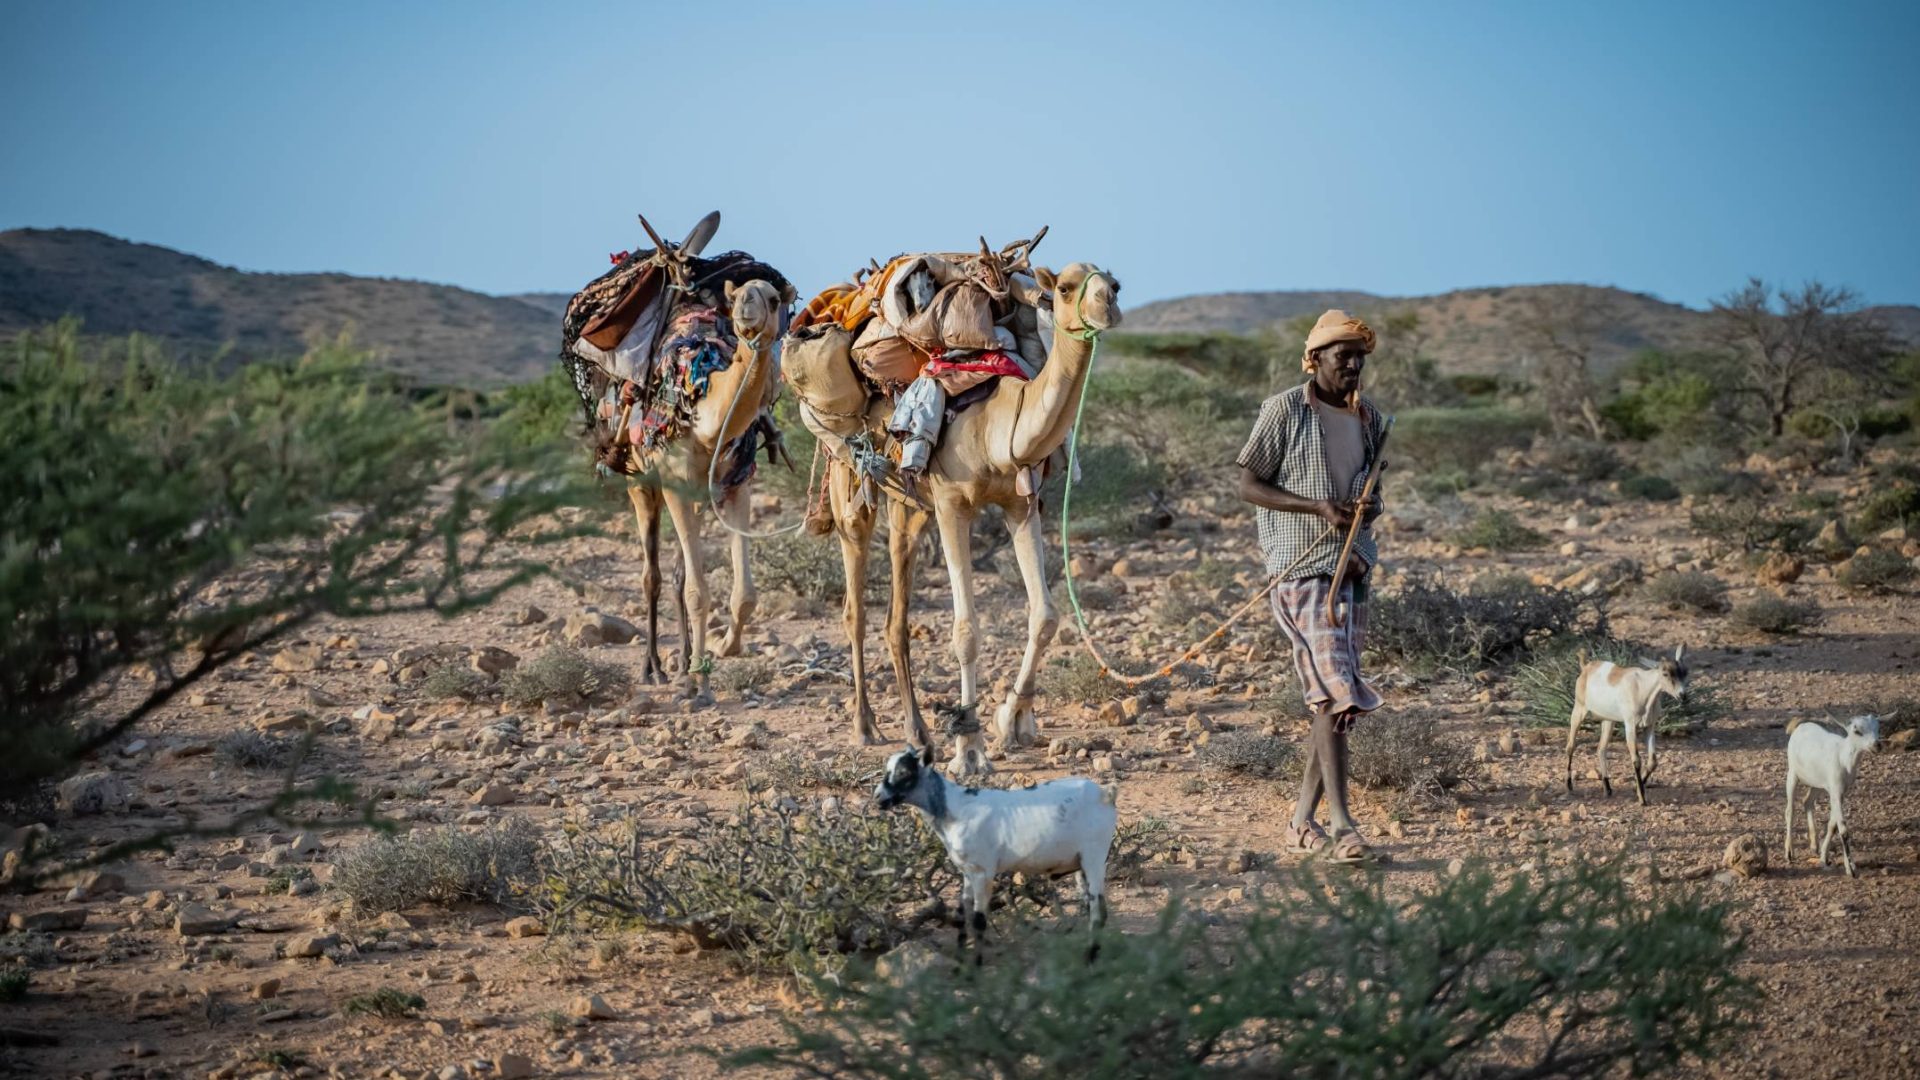 pastore somalo con due cammelli in contesto di siccità